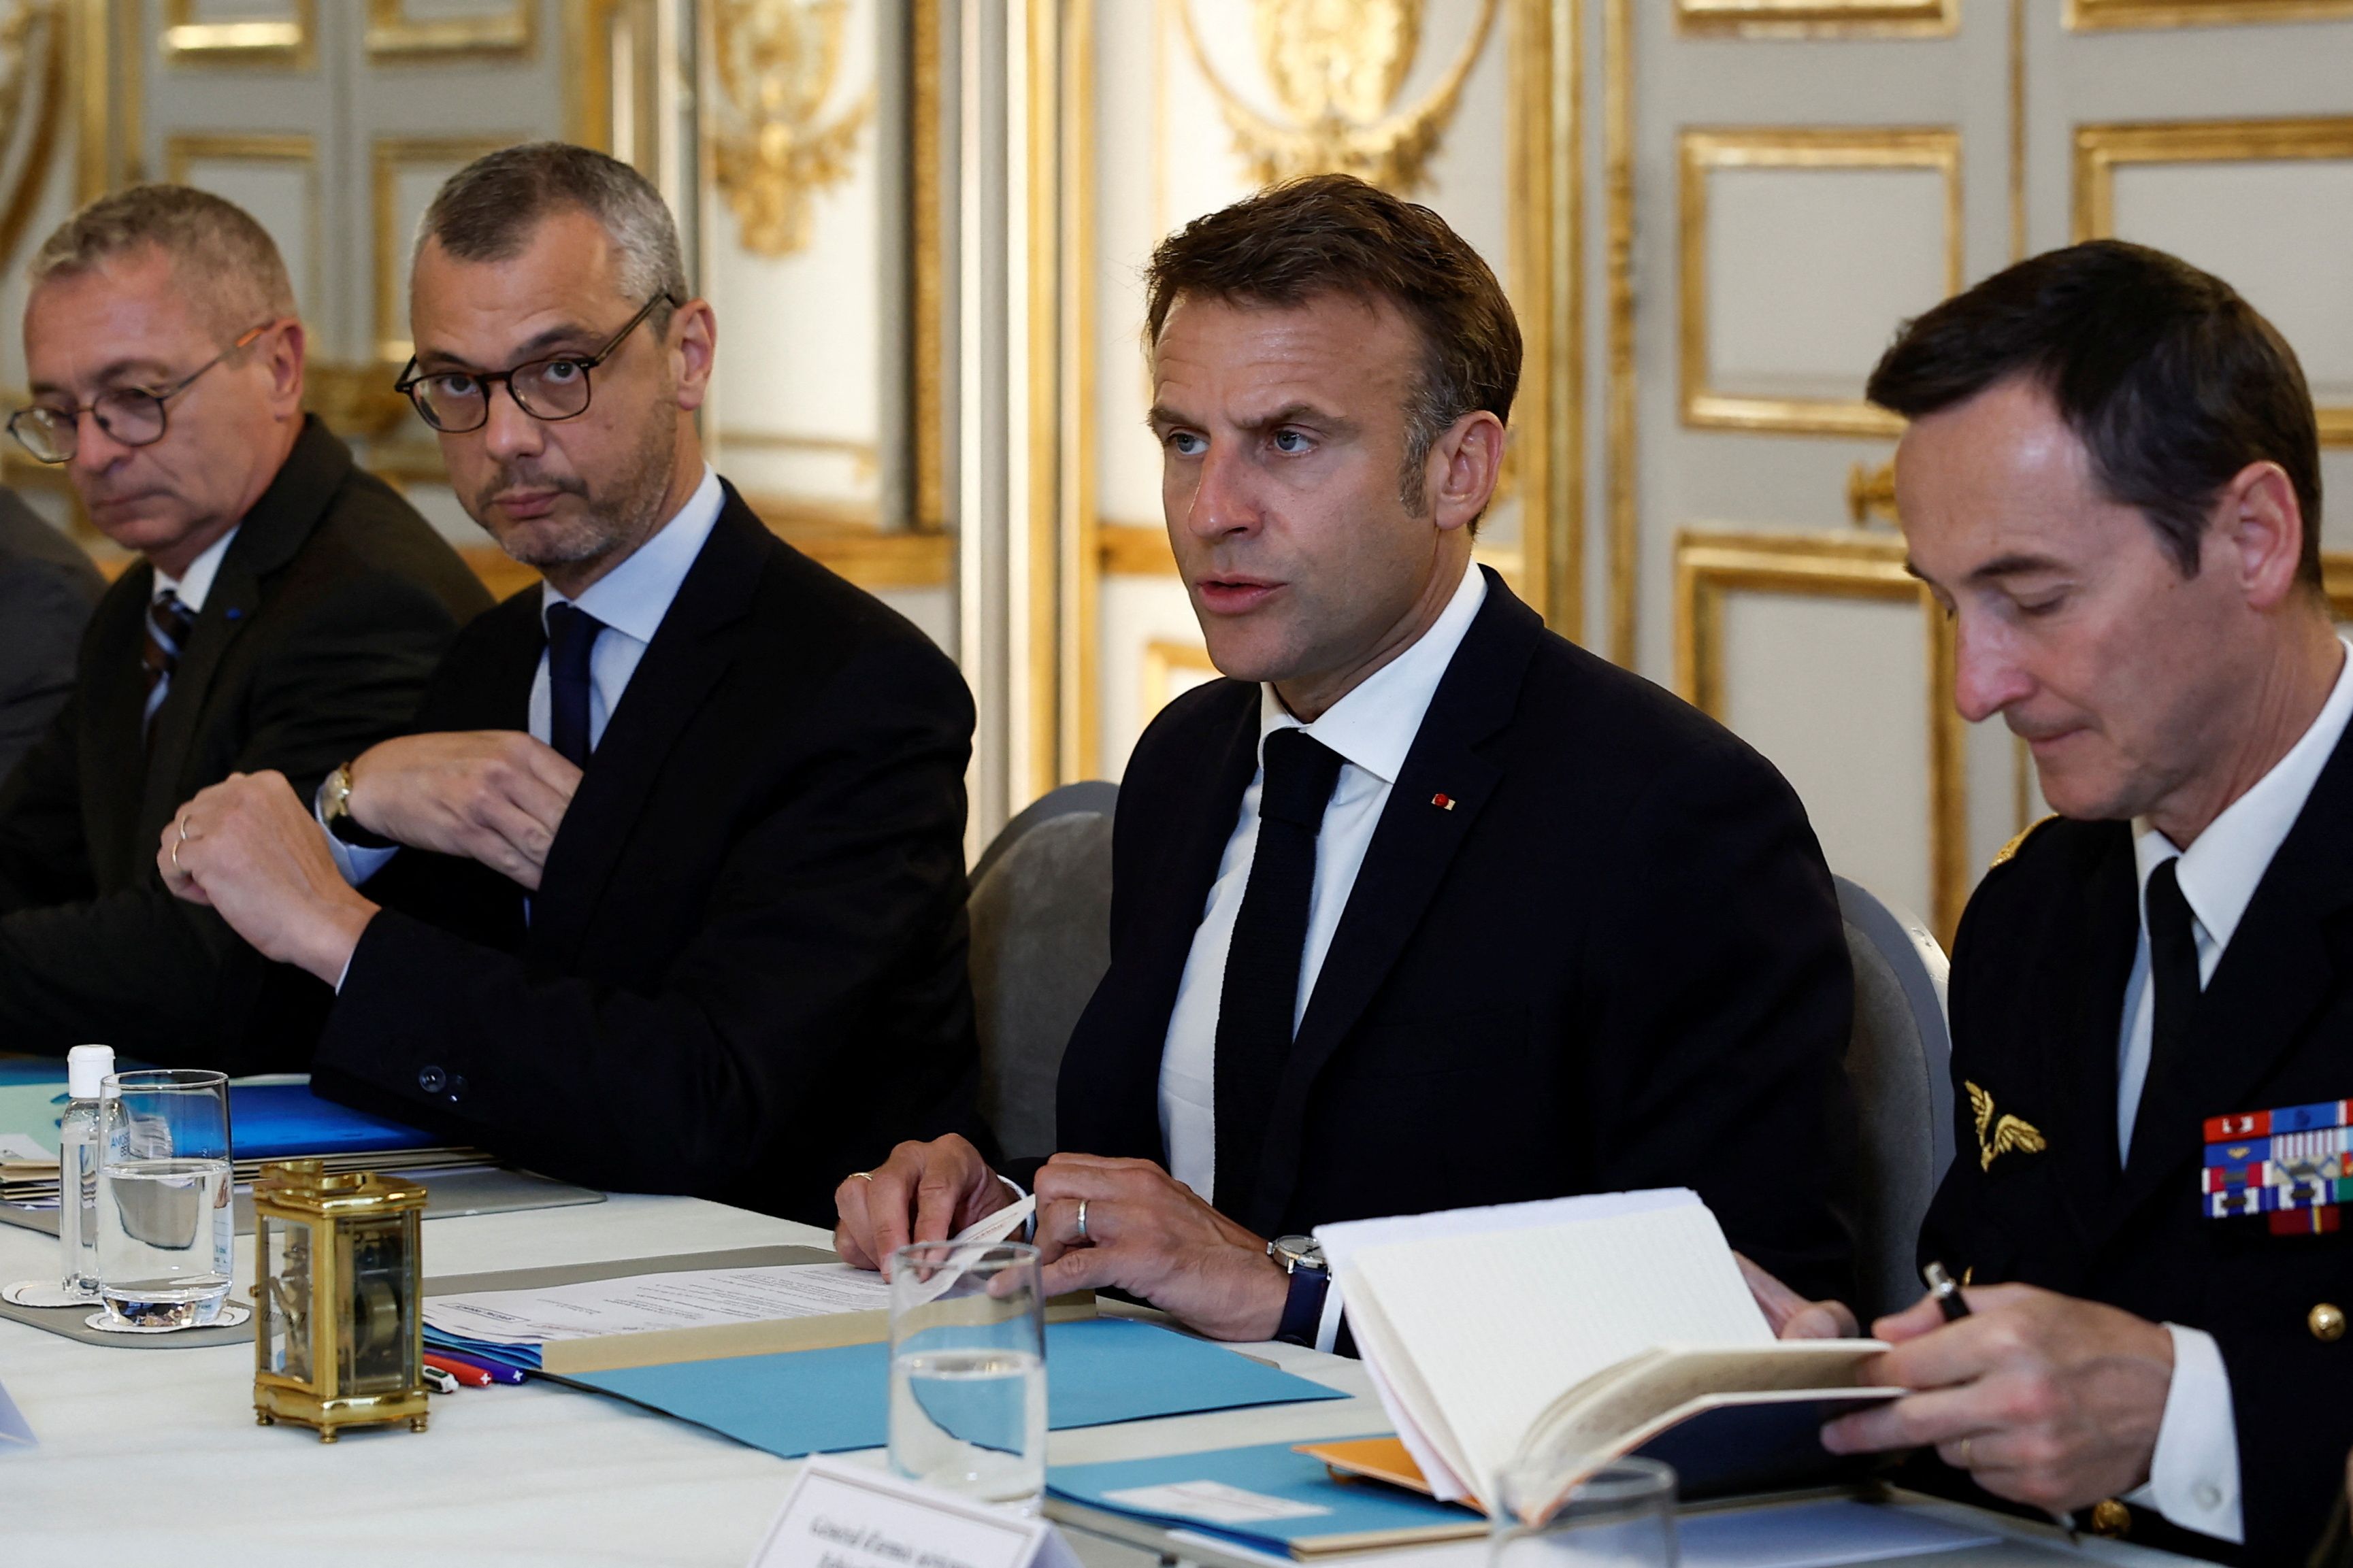 Emmanuel Macron Frantziako presidentea —erdian—, Kaledonia Berriz gobernuarekin atzo egin zuen bilkuran, Parisen. BENOIT TESSIER / EFE